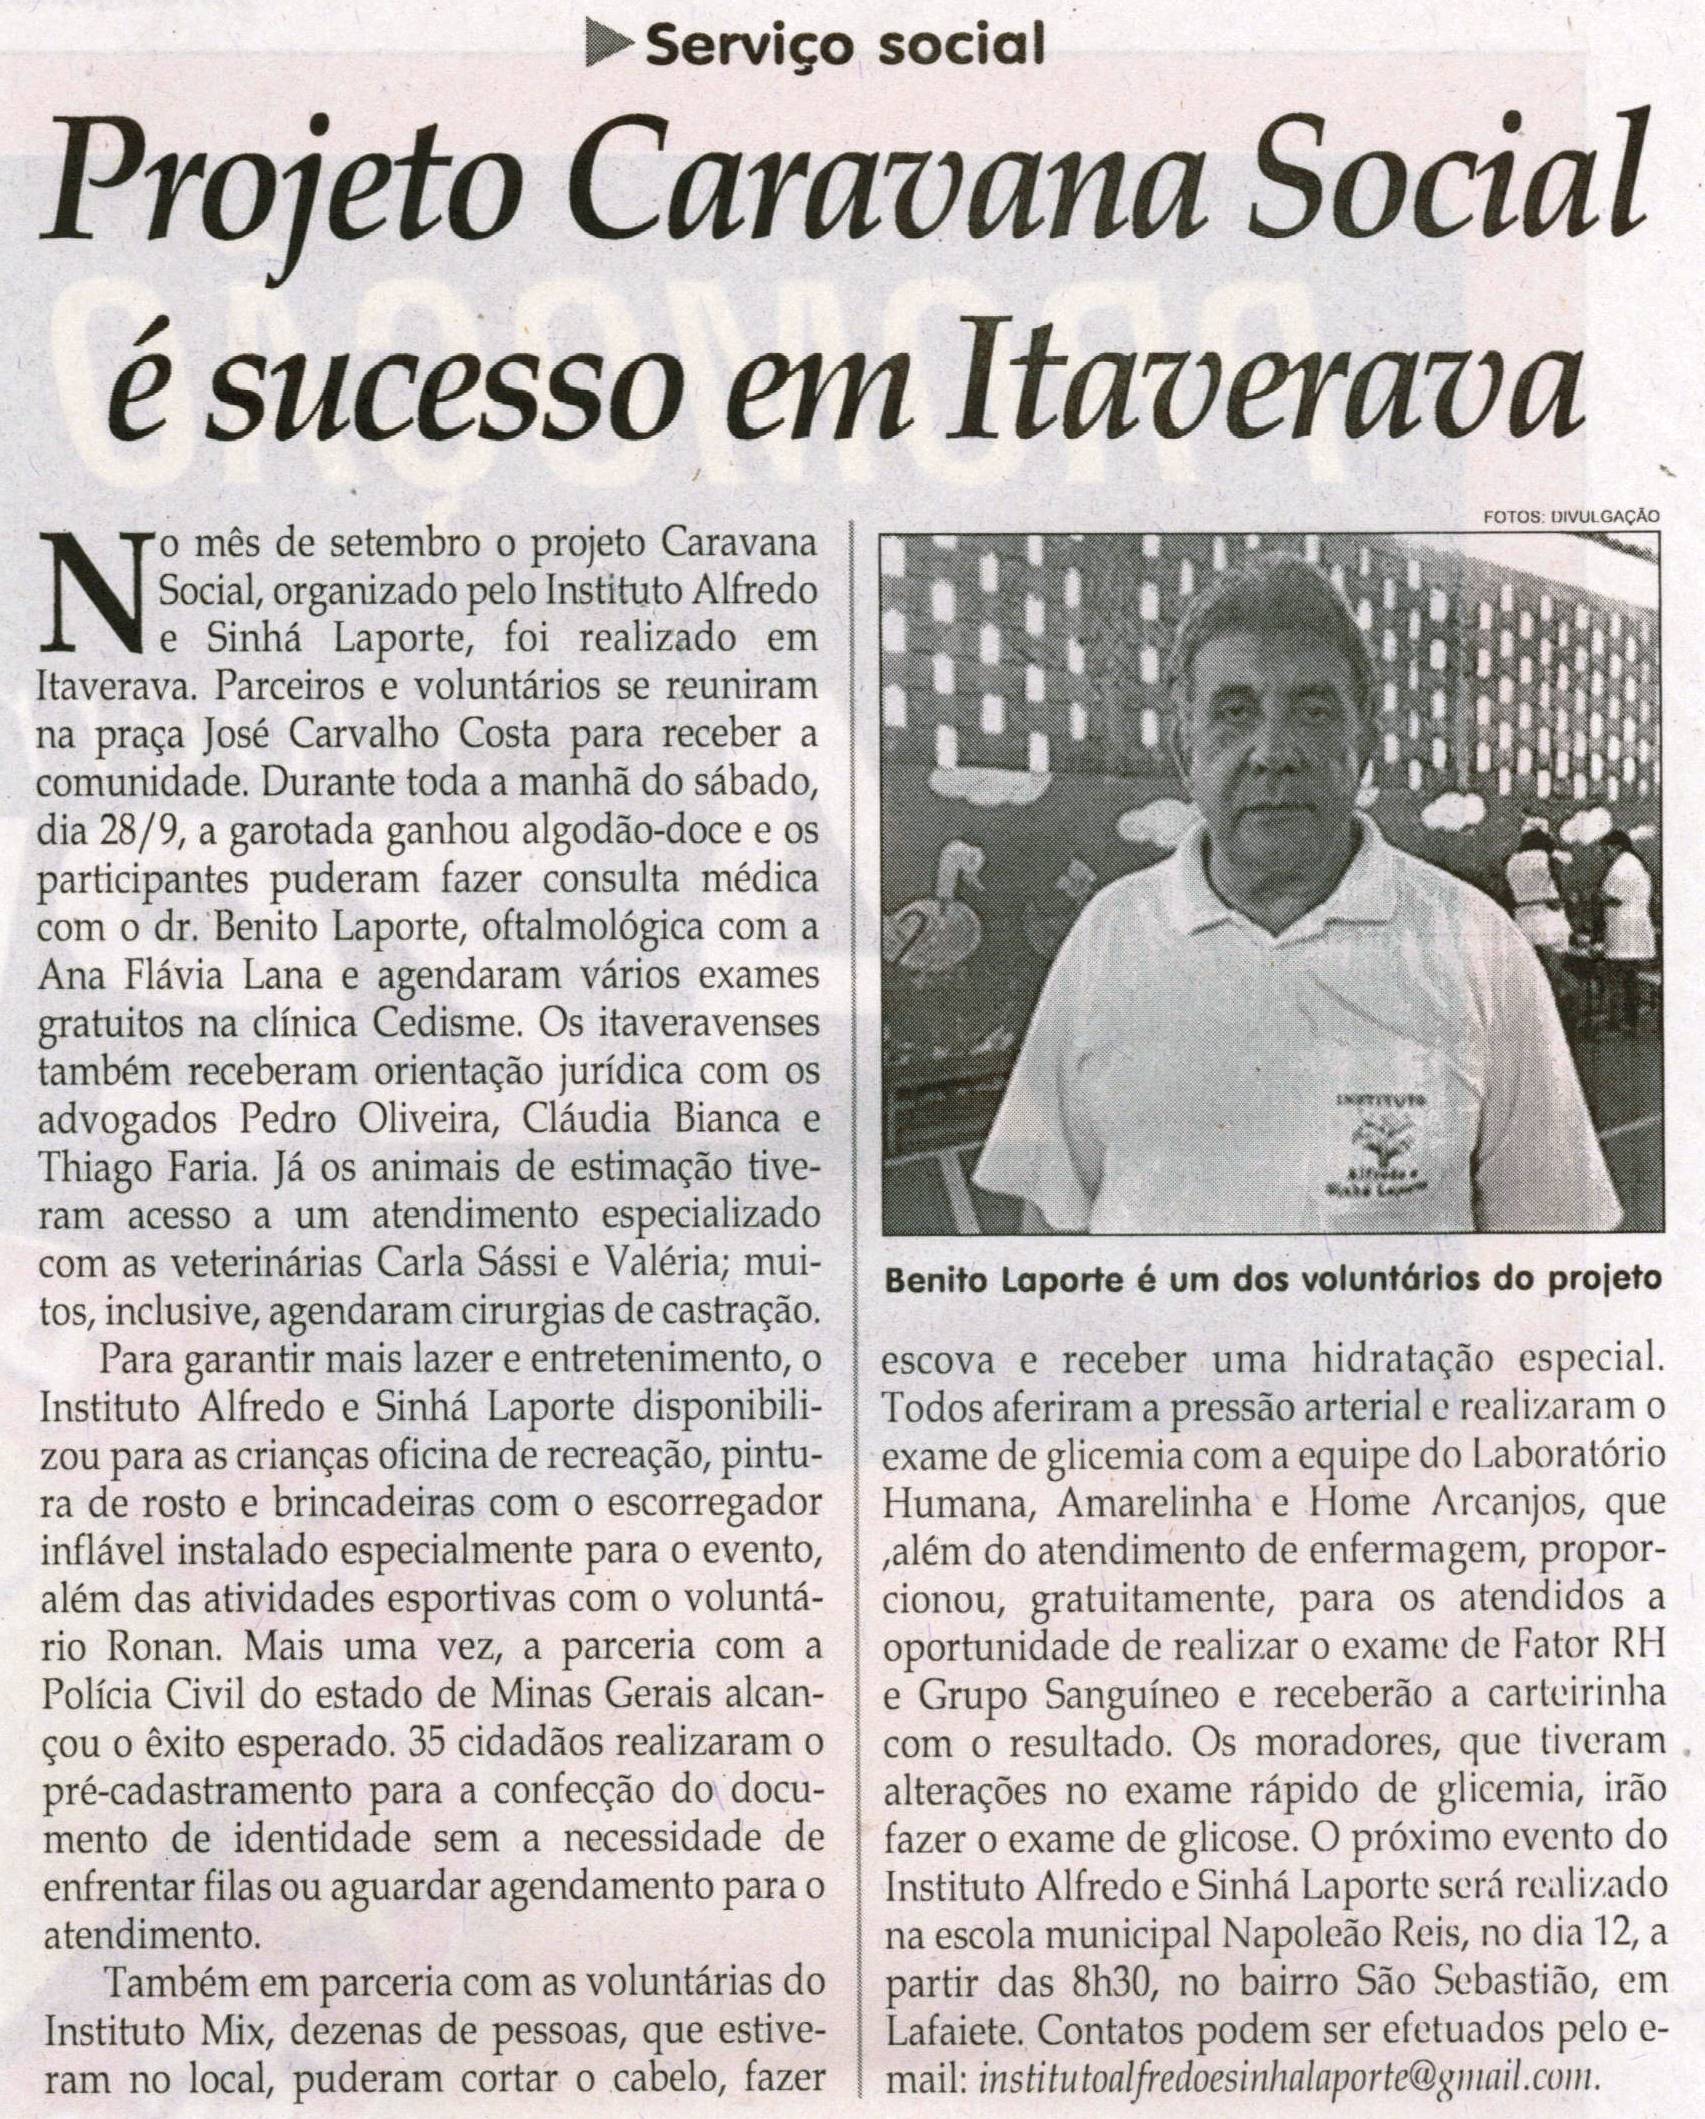 Projeto Caravana Social é sucesso em Itaverava. Jornal Correio da Cidade, Conselheiro Lafaiete, 05 out. 2013 a 11 out. 2013, Política, p. 06.